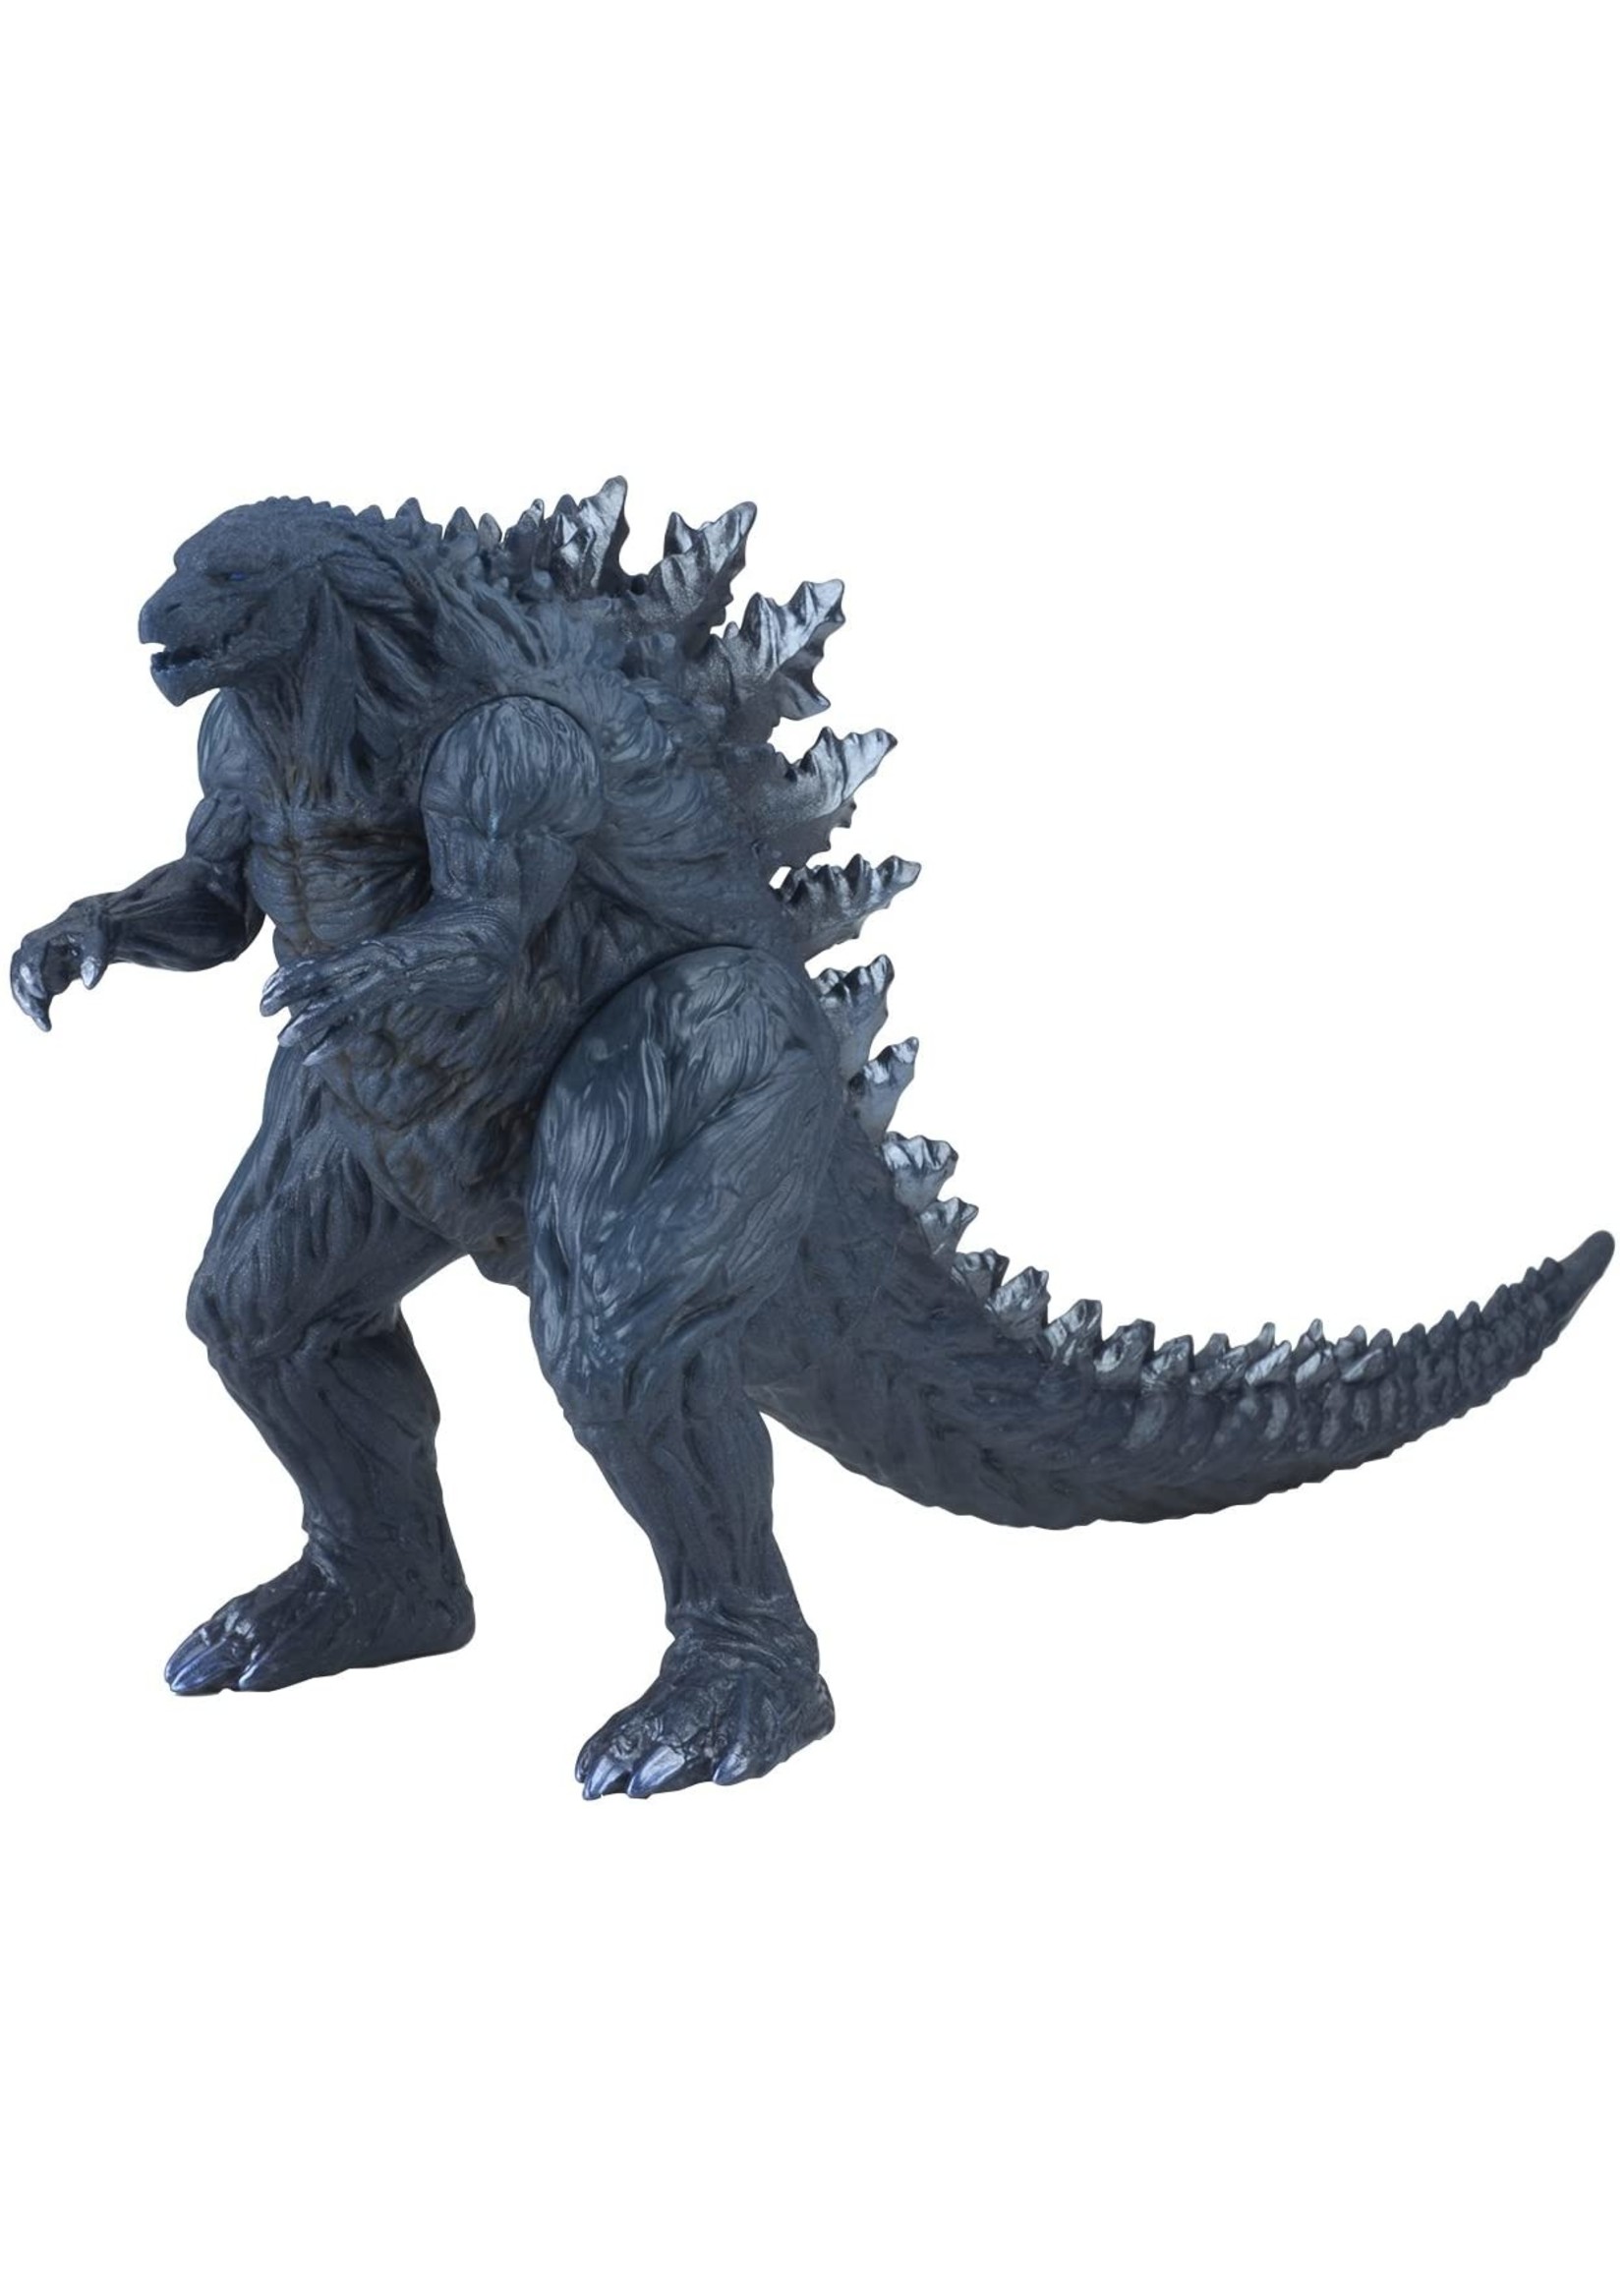 Godzilla Godzilla Anime